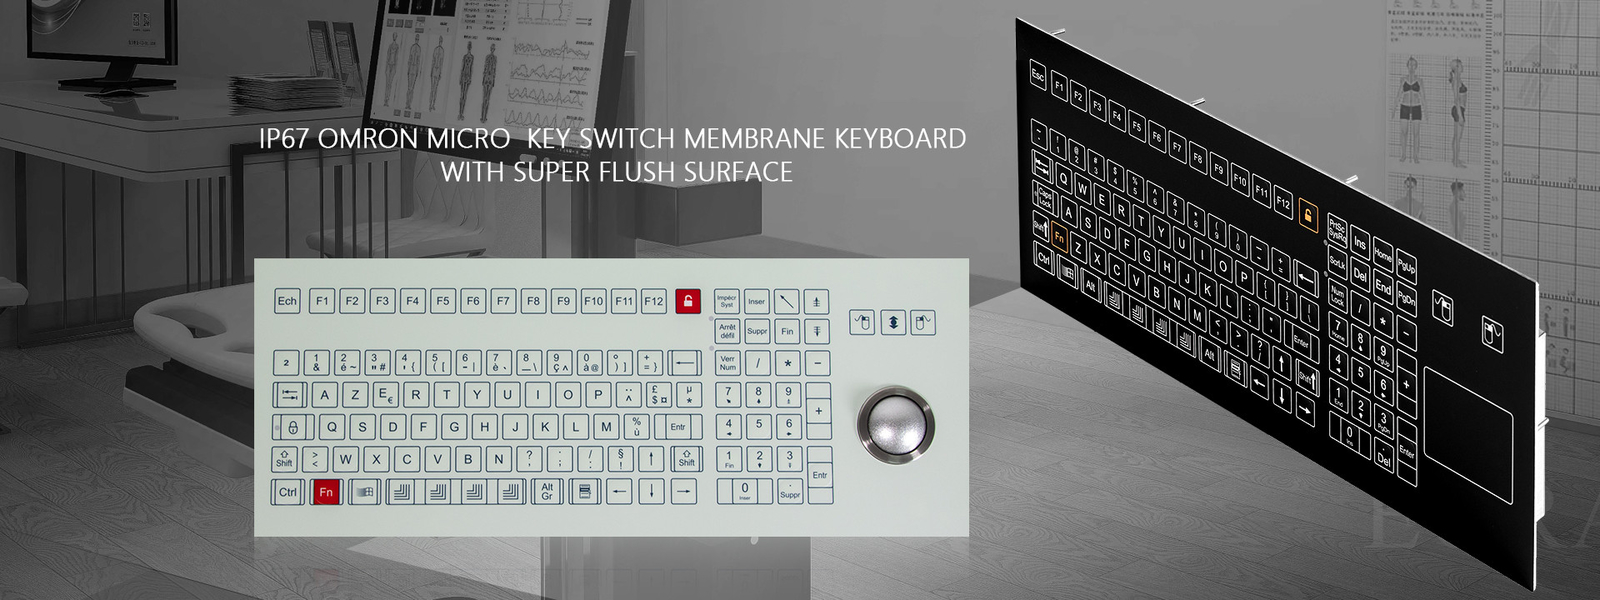 لوحة المفاتيح الصناعية مع لوحة اللمس